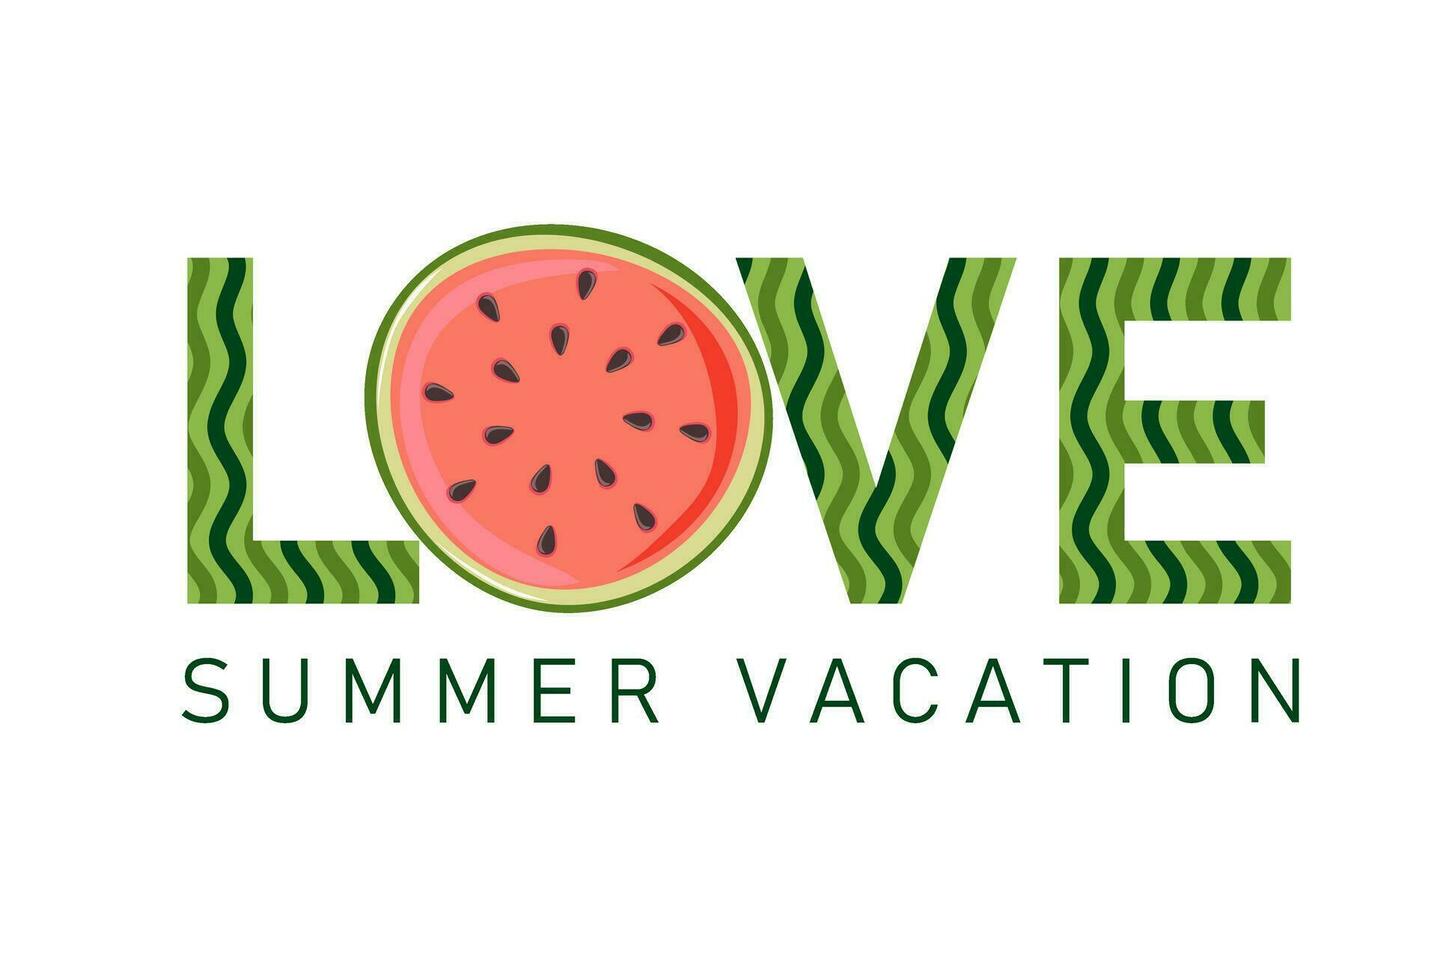 Liebe Sommer- Urlaub. Wassermelone Scheibe mit rot Fleisch und schwarz Samen. Sommer- Design zum Poster, Banner, t Shirt, Karte, Flyer vektor